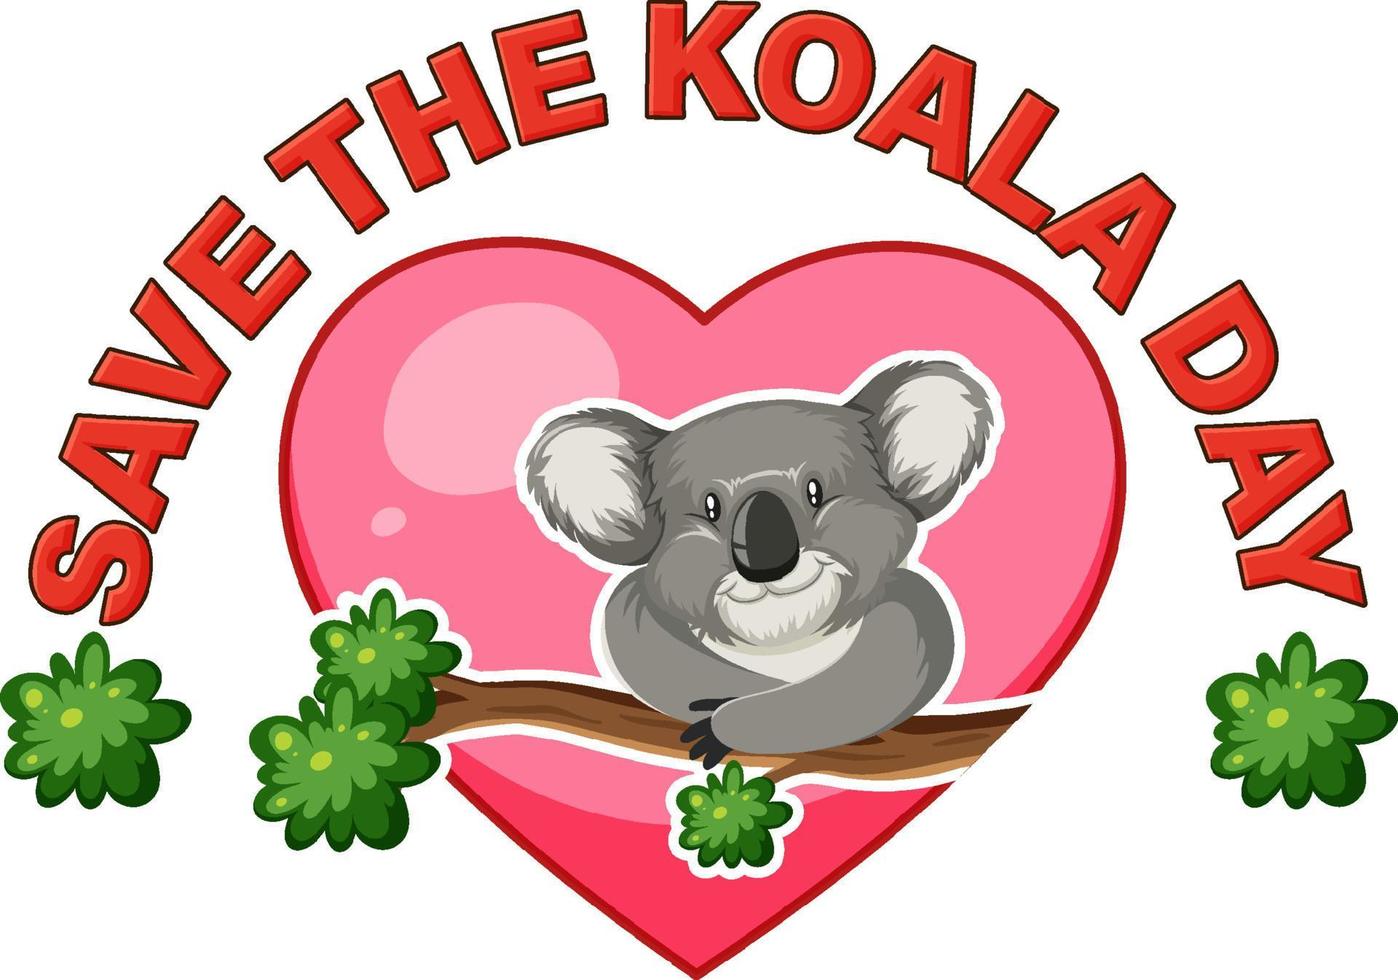 salve o design de banner do dia do coala vetor